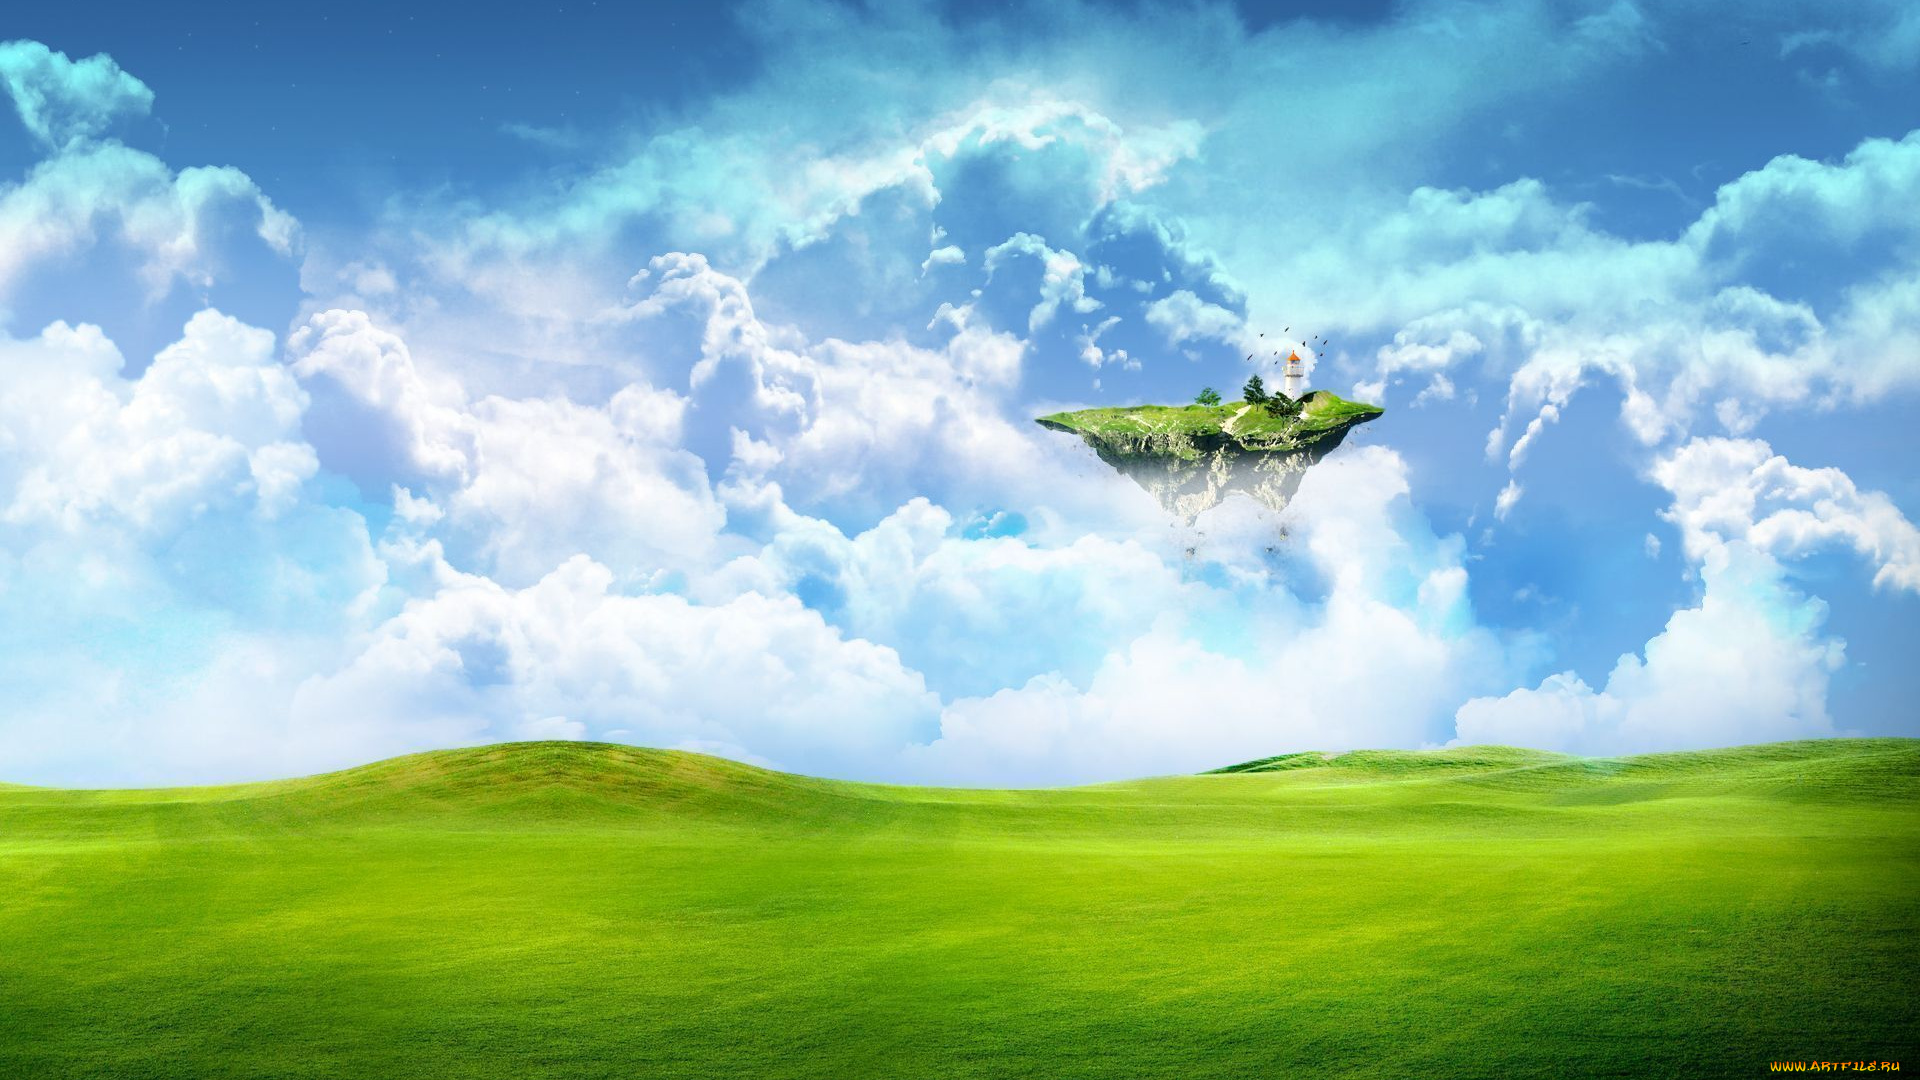 разное, компьютерный, дизайн, зелень, трава, поле, фантастика, земля, облака, небо